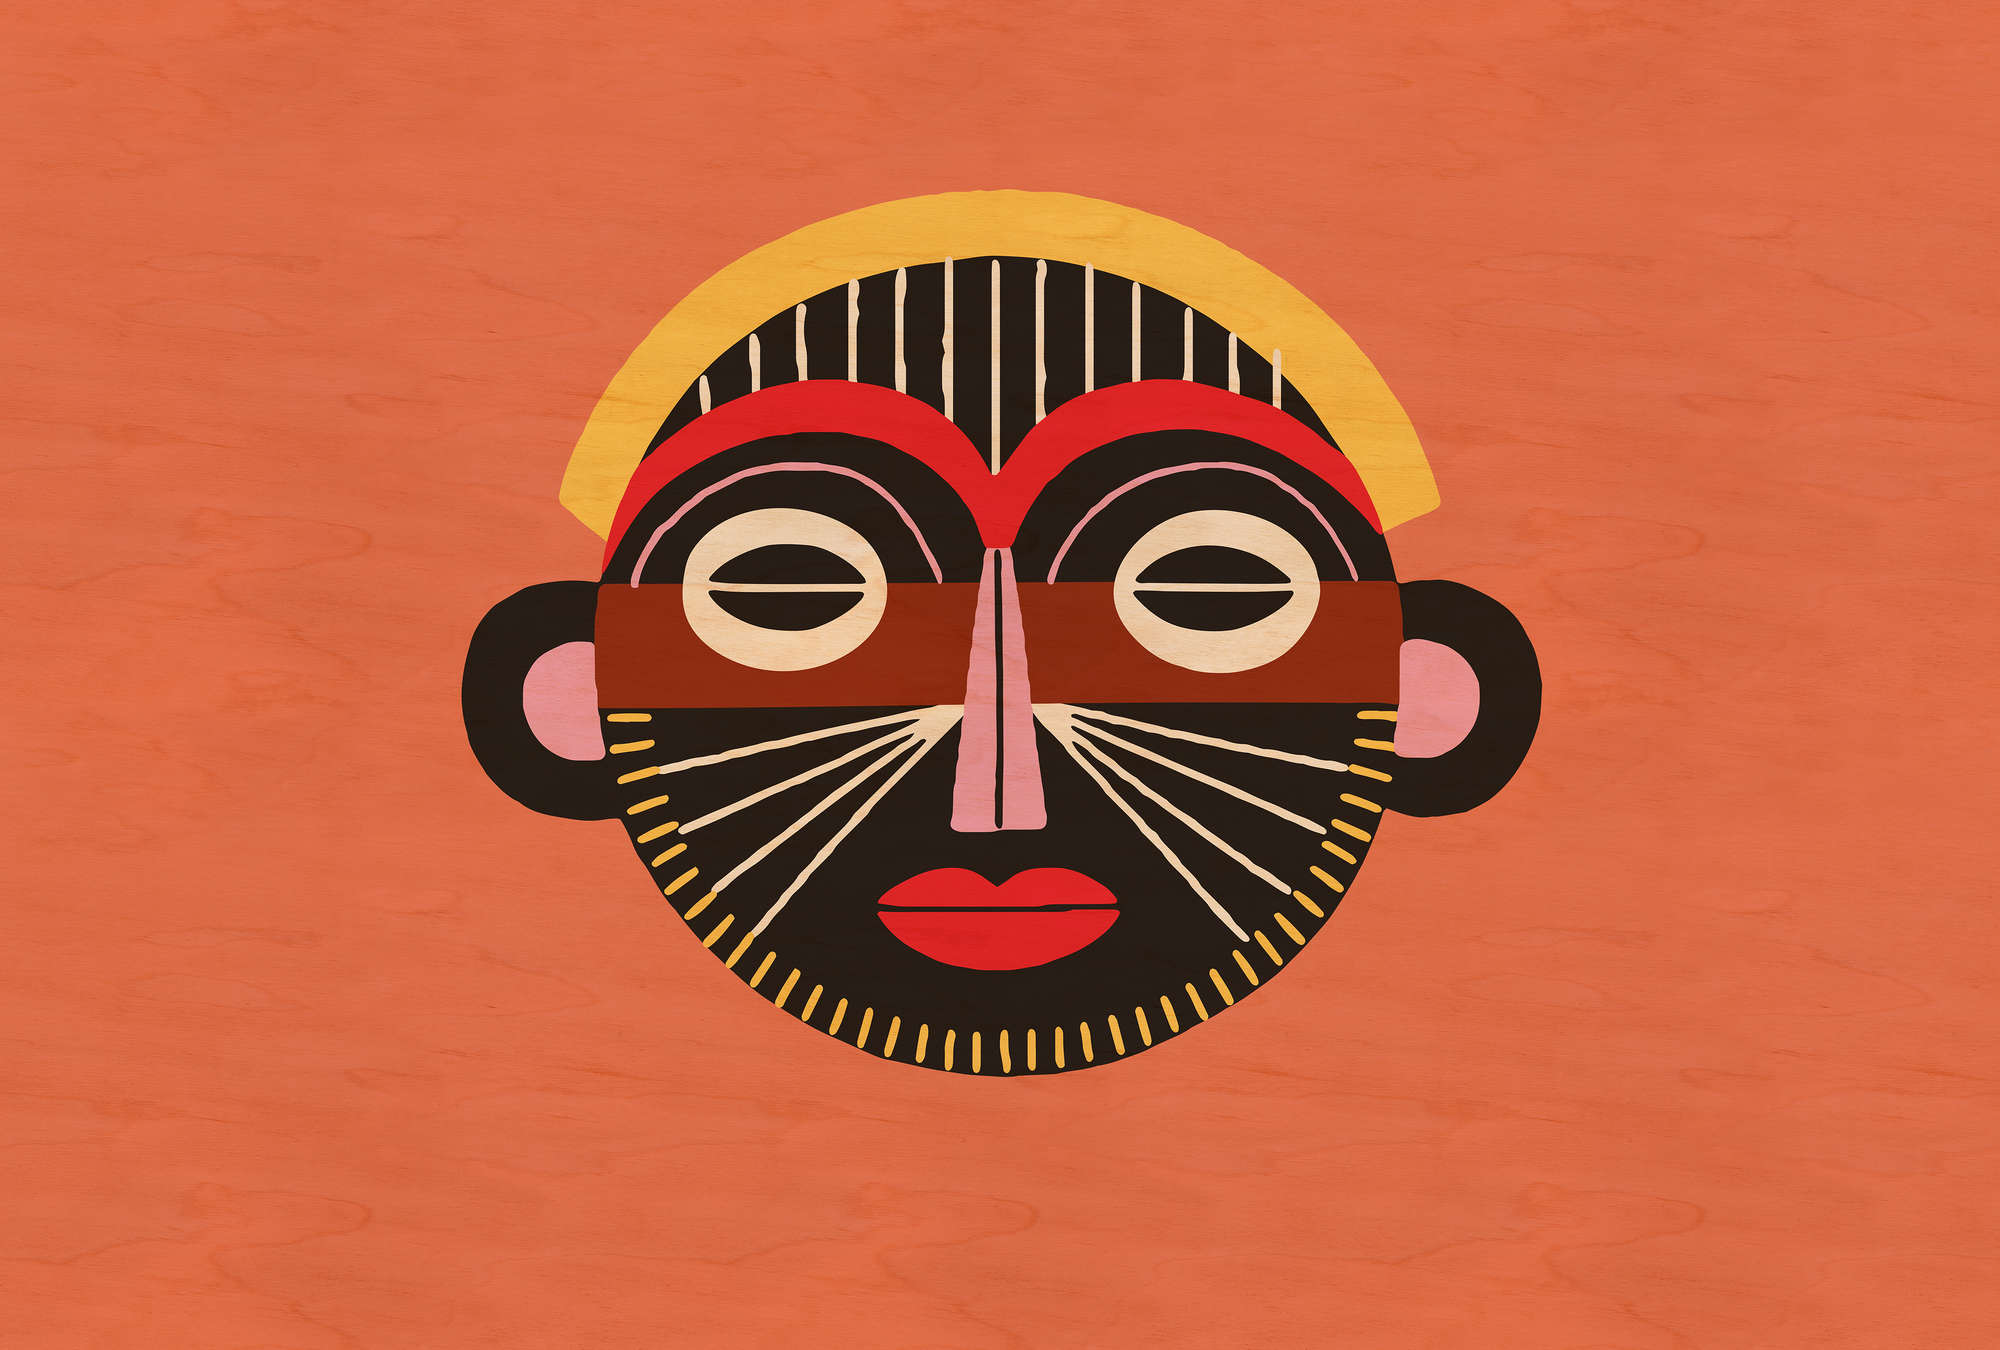             Overseas 2 - Maschera etnica per sfondi con design tribale
        